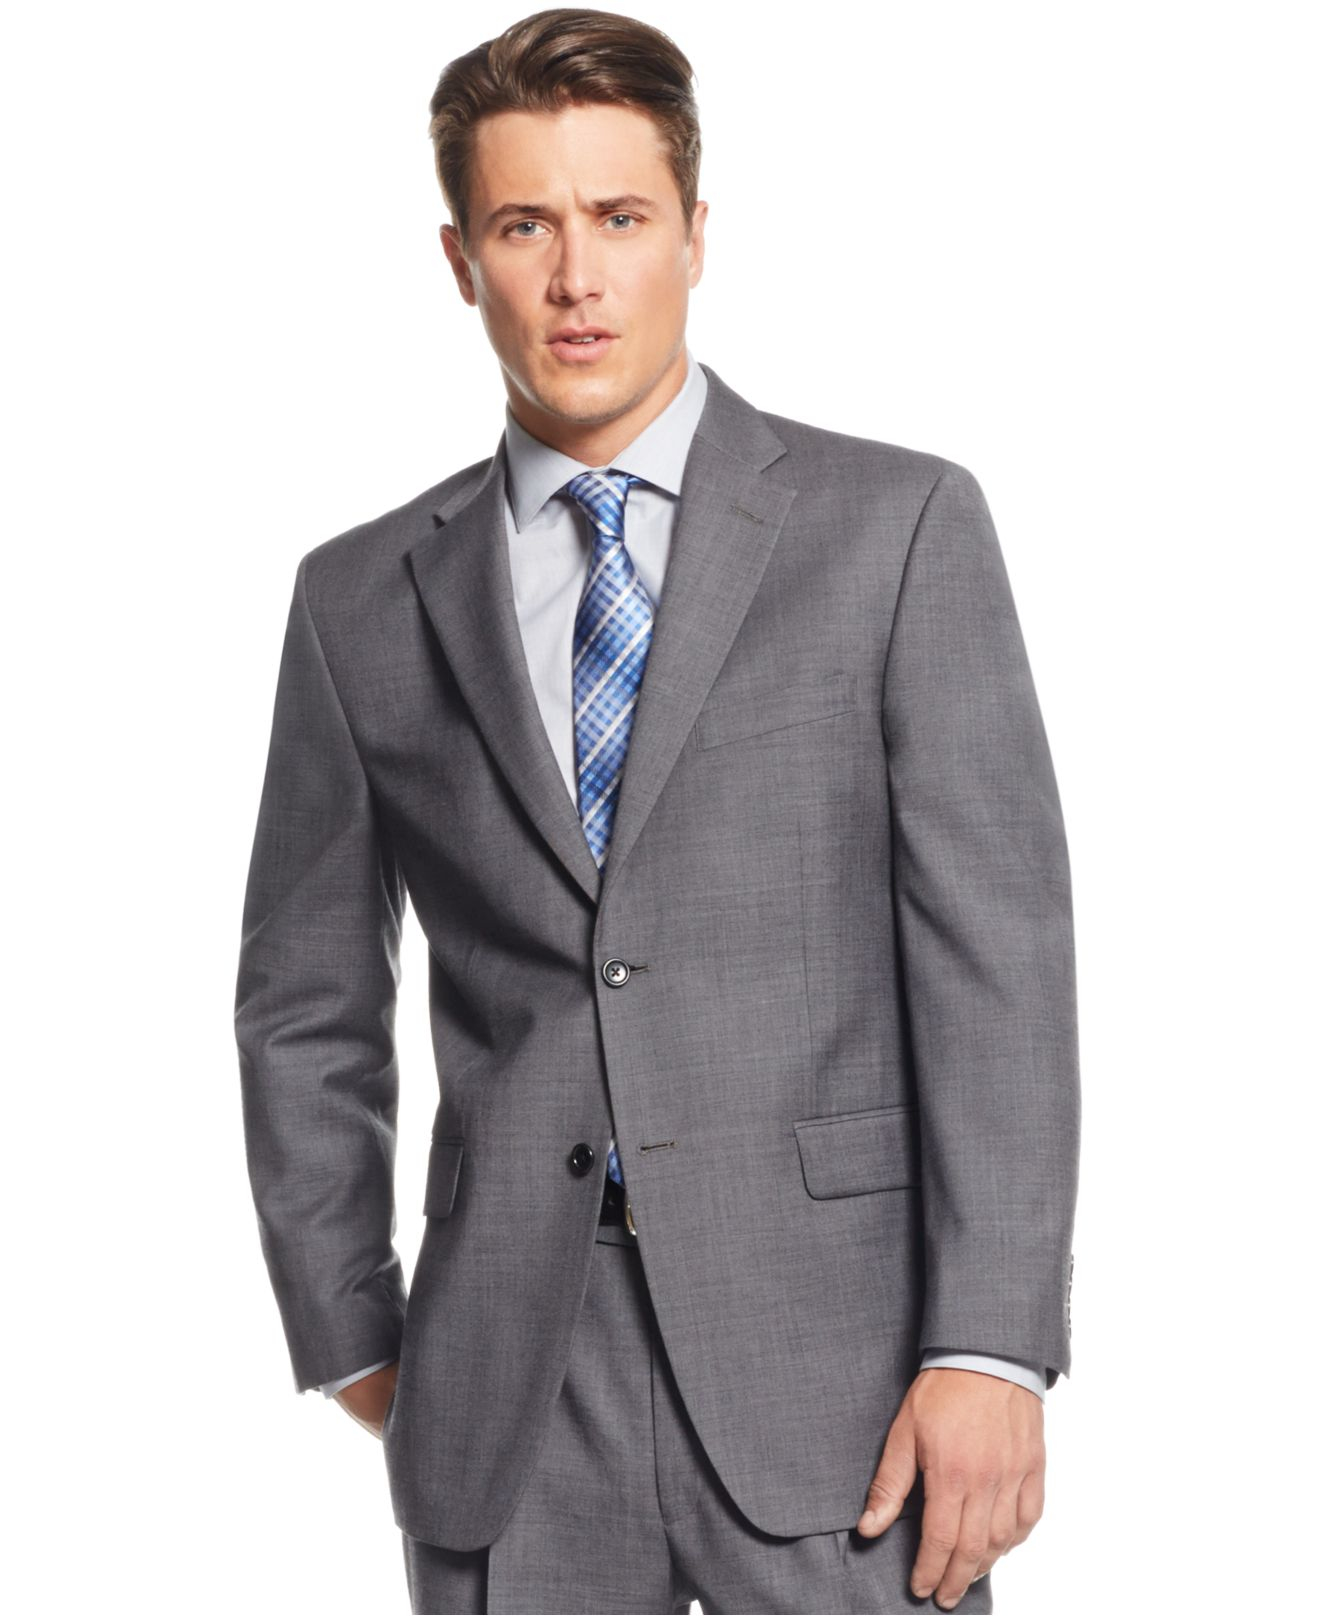 Men's Suits Jones New York : Jones New York Men's Size 42L 3 Button